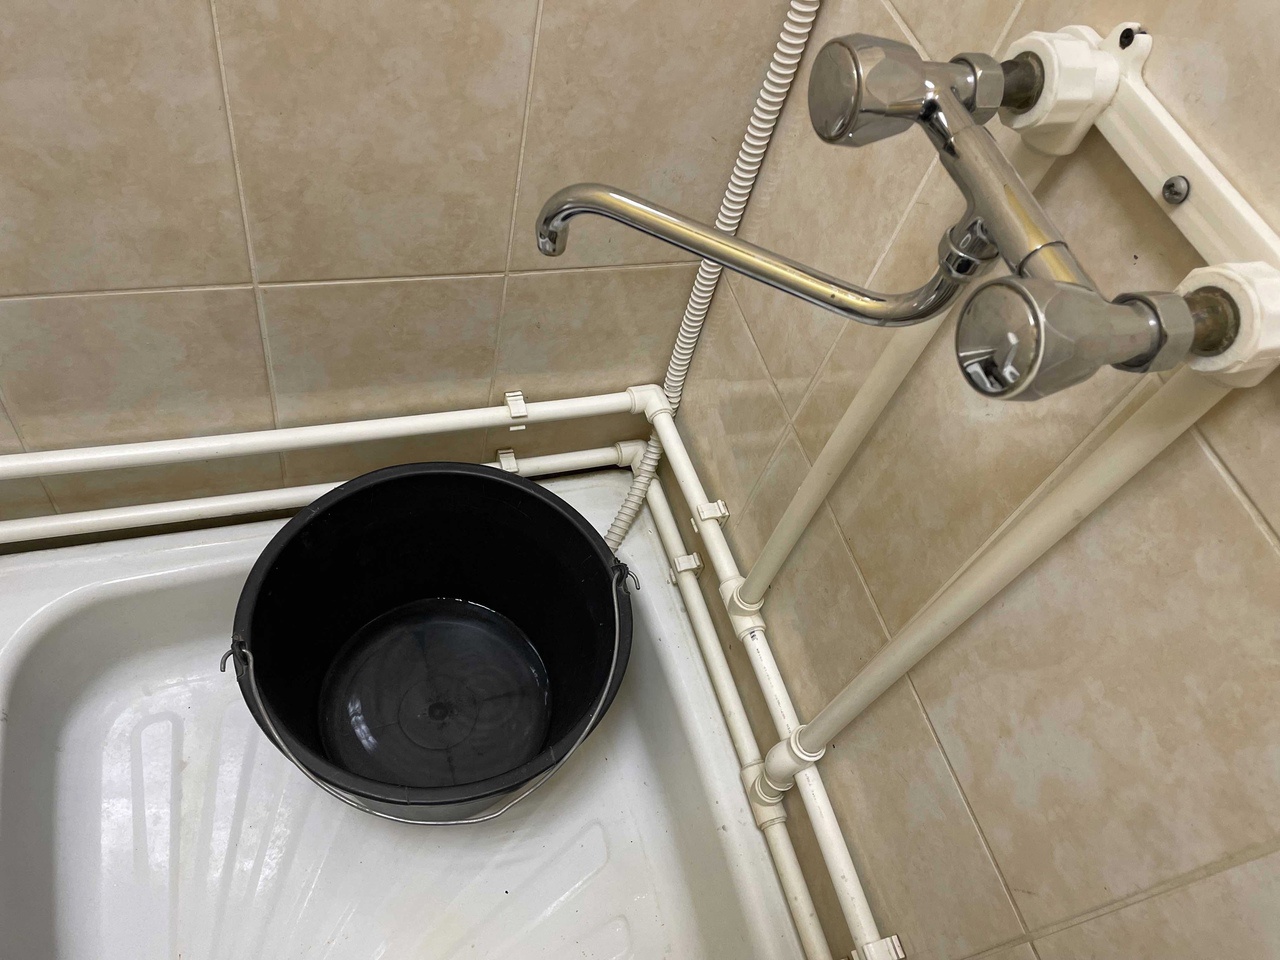 "Ни помыться, ни поесть": в одном из домов Сыктывкара замерзла вода в трубах